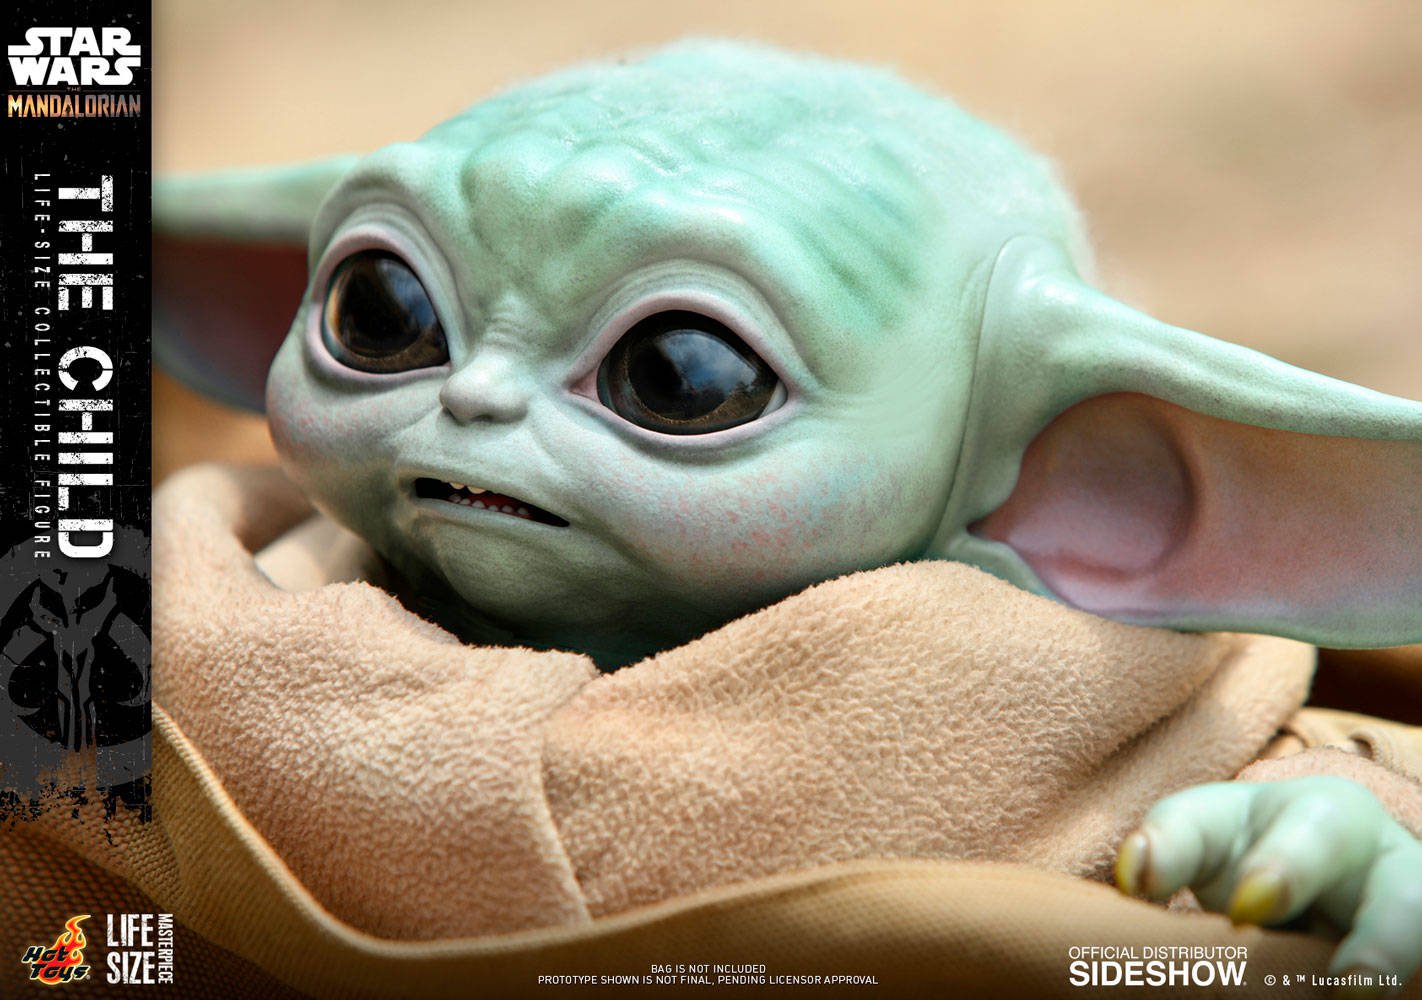 Immagine di Baby Yoda, Hot Toys presenta "The Child" Life-Size Figure